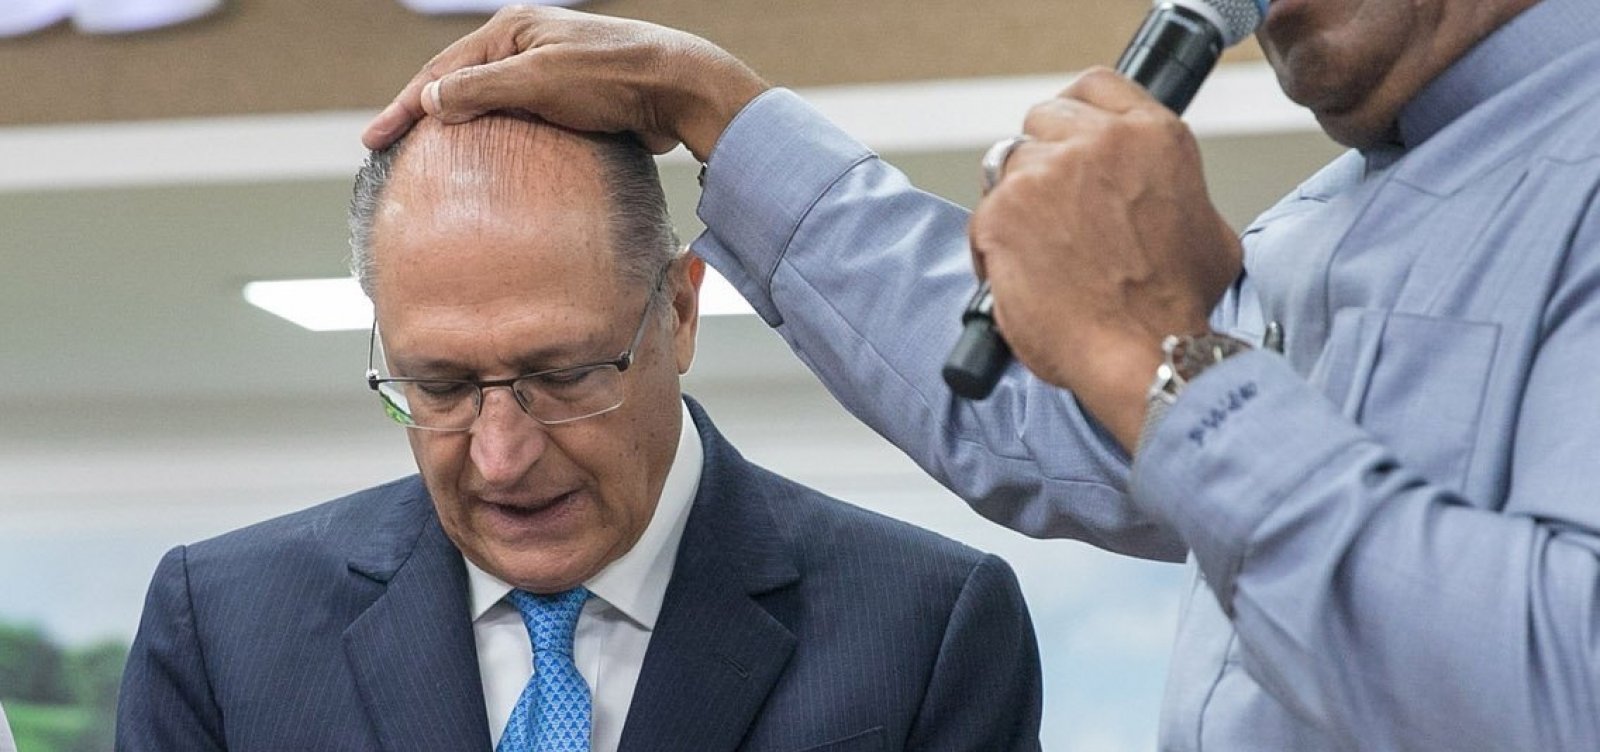 Acordo com Alckmin pode dar ao centrão poder de tutela inédito, diz coluna